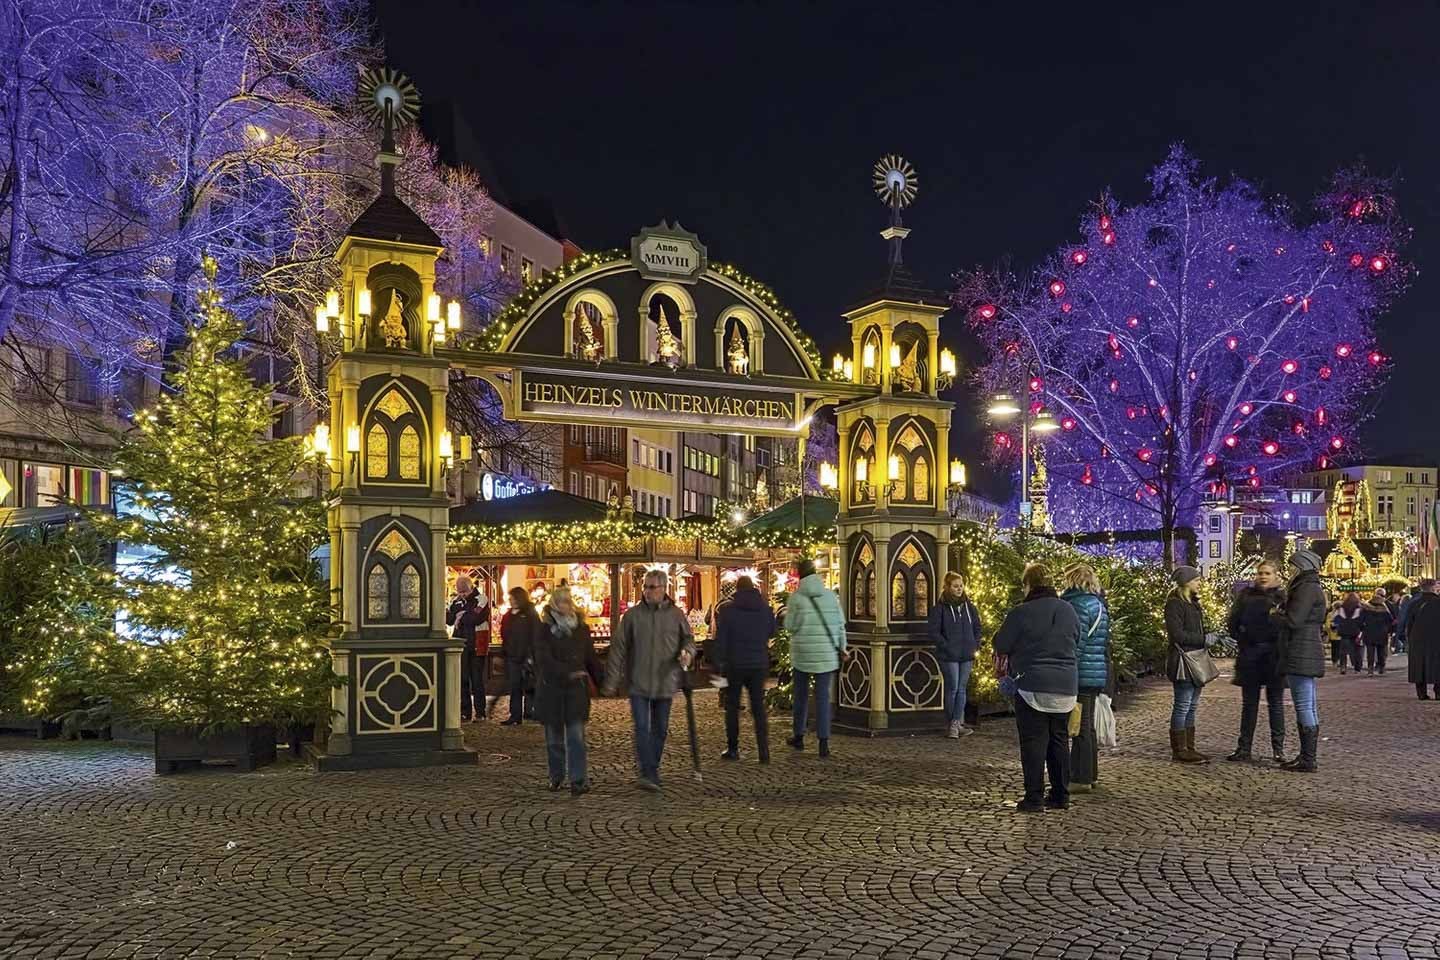 Rực rỡ ánh đèn những khu chợ Giáng sinh tựa như cổ tích ở châu Âu